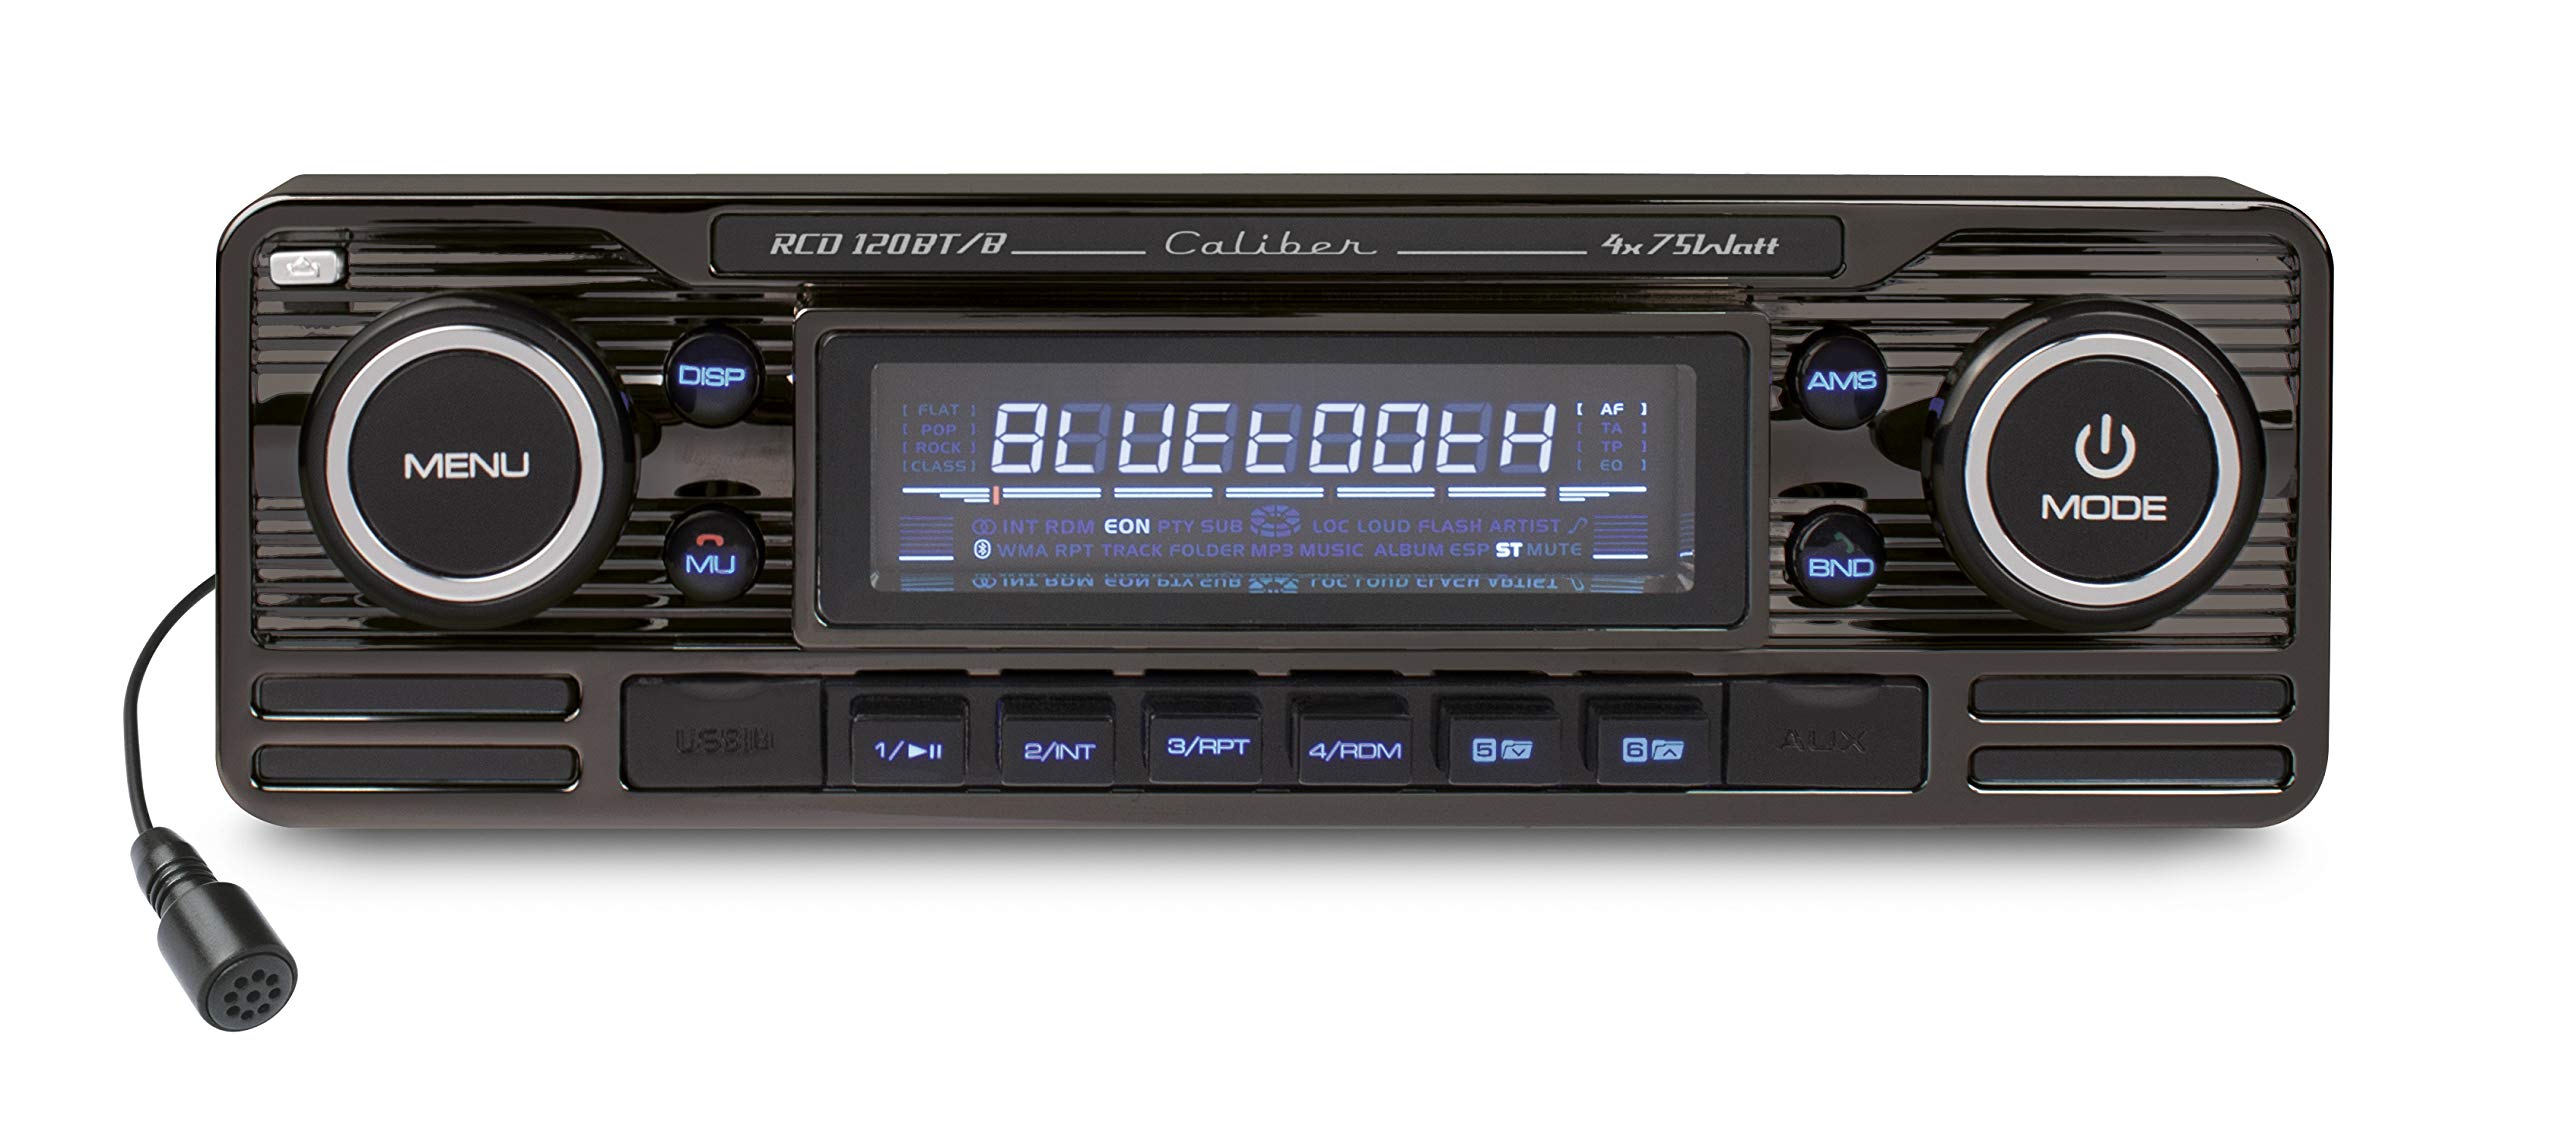 Caliber RCD120BT/B Retrodesign Autoradio mit Bluetooth Freisprechanlage (CD Tuner, SD Kartenslott, USB Anschluss) schwarz